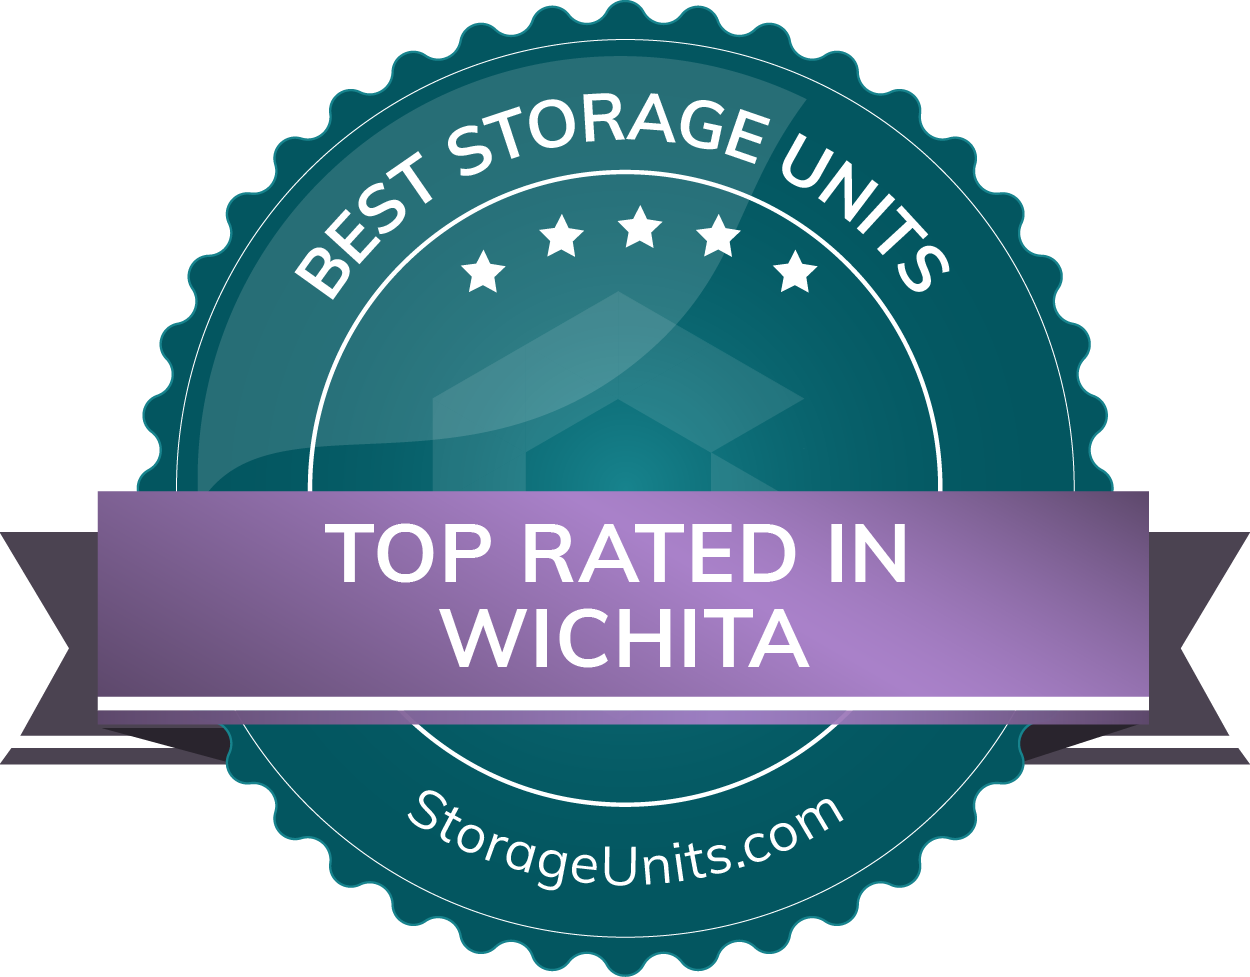 Best Self Storage Units in Wichita, Kansas of 2022